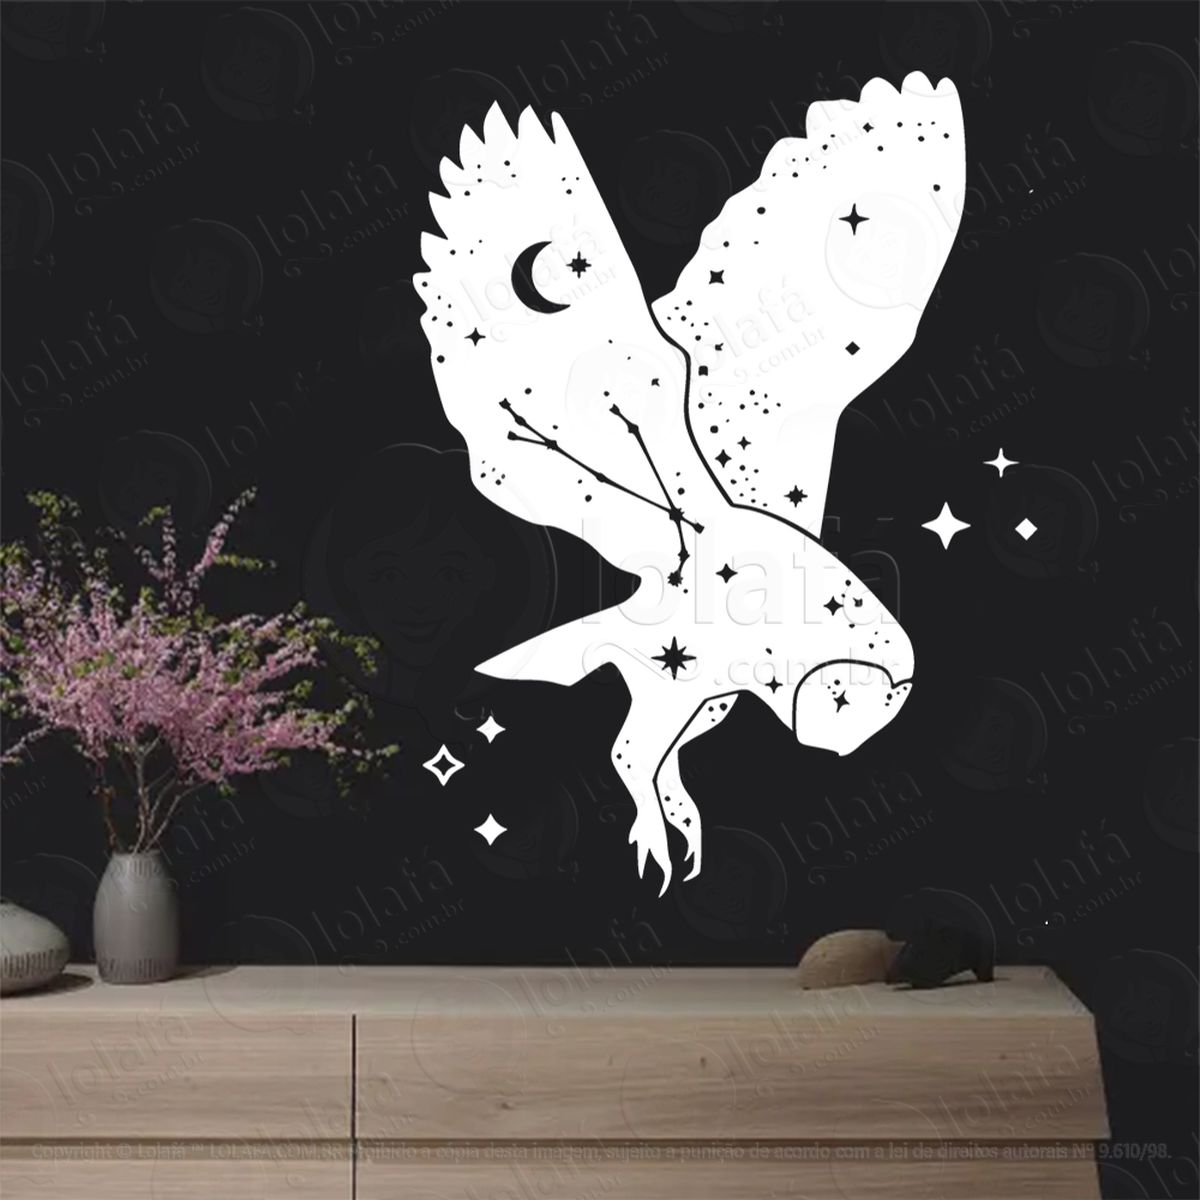 coruja estrelada starry owl adesivo de parede decorativo para casa, sala, quarto, vidro e altar ocultista - mod:274